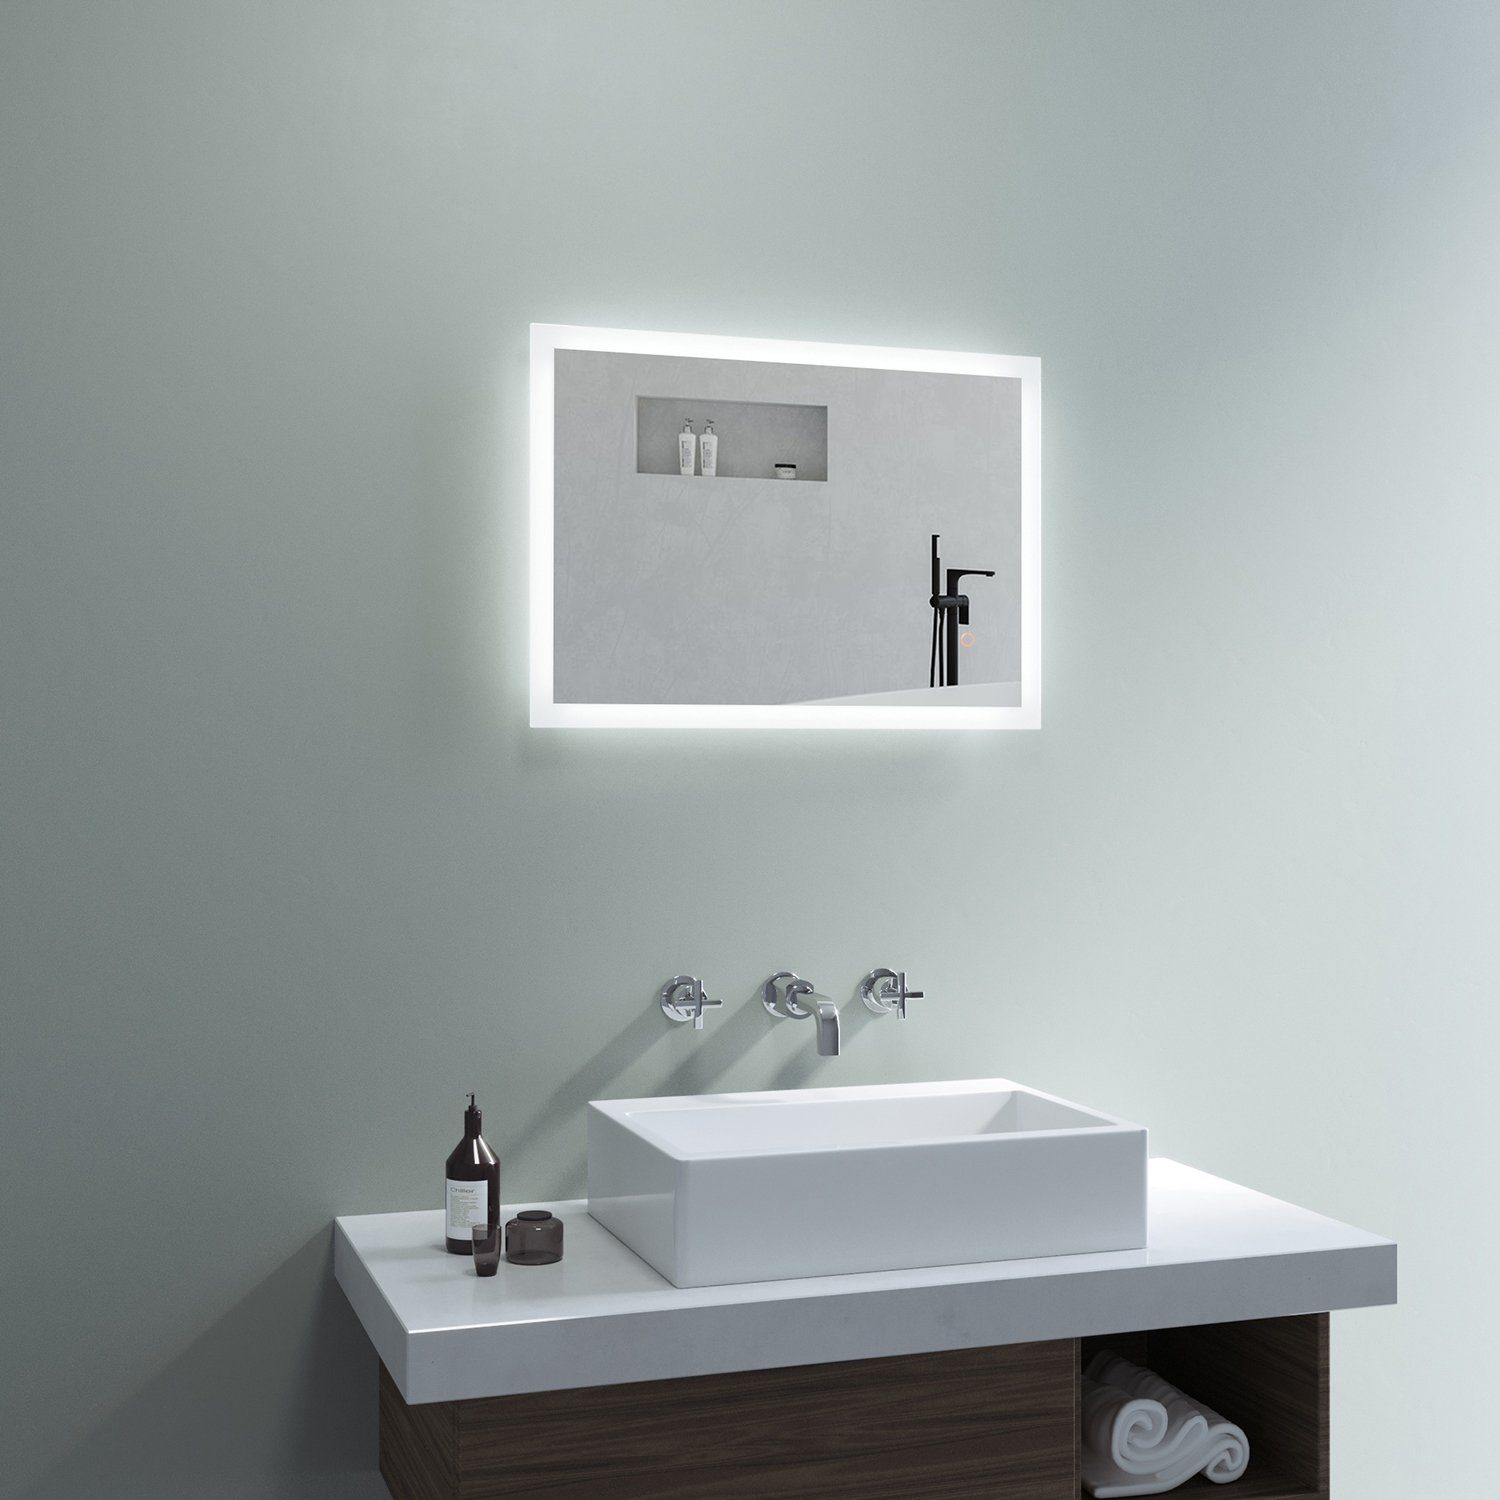 mit Beleuchtung Badspiegel 6400K Spiegelheizung Bad Lichtspiegel Dimmbar AQUABATOS Spiegel Kaltweiß Led, Badezimmerspiegel Touch Beschlagfrei